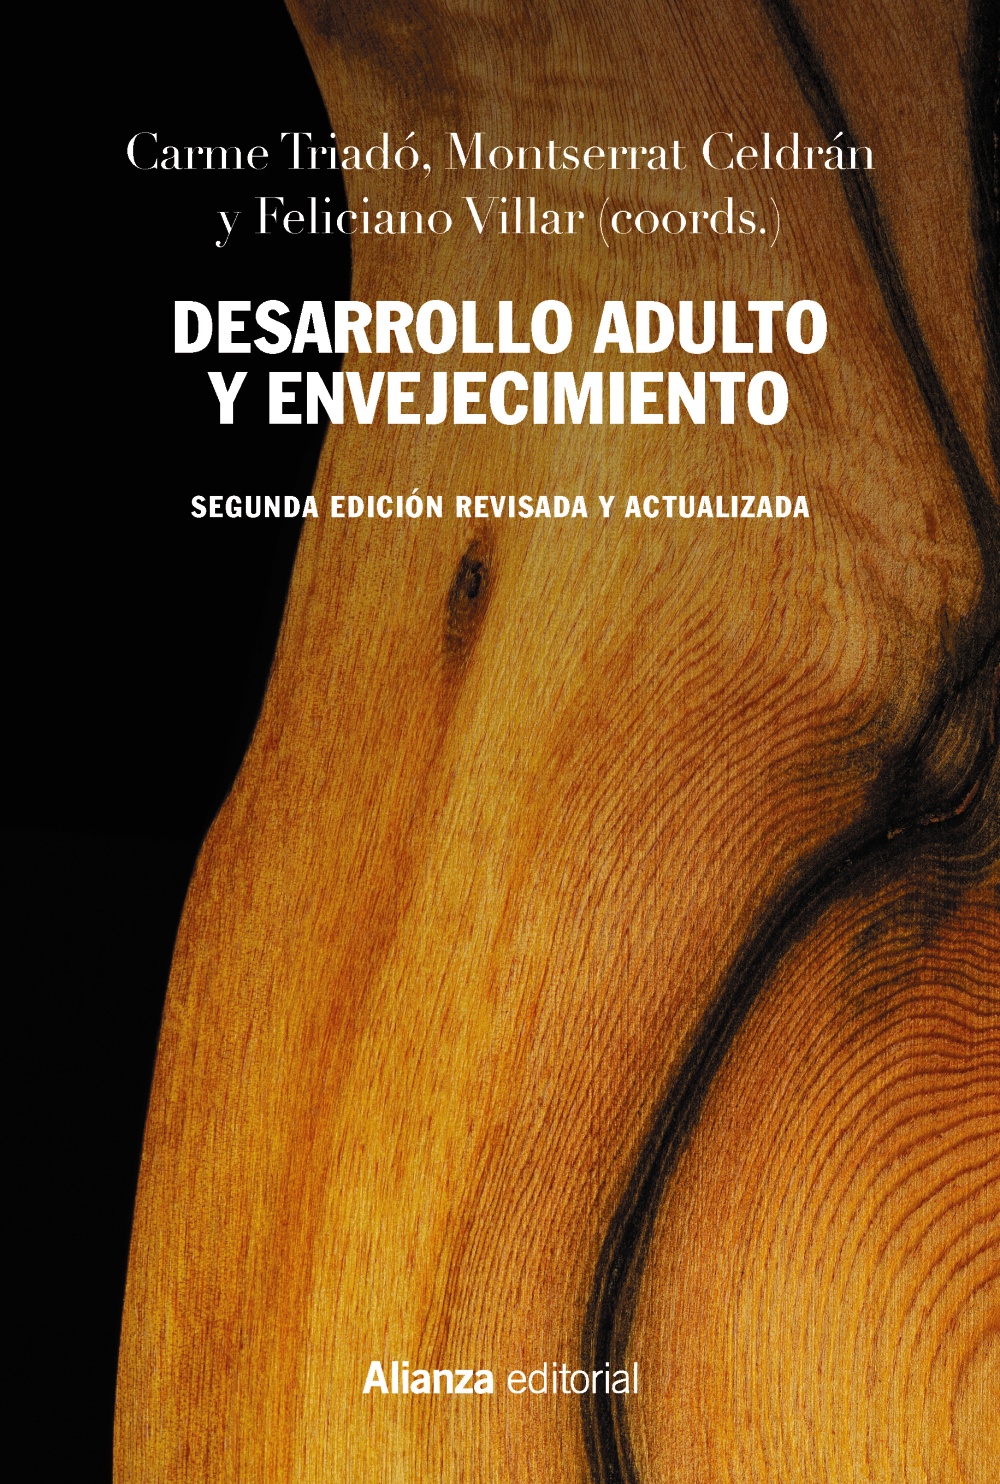 Imagen de portada del libro Desarrollo adulto y envejecimiento